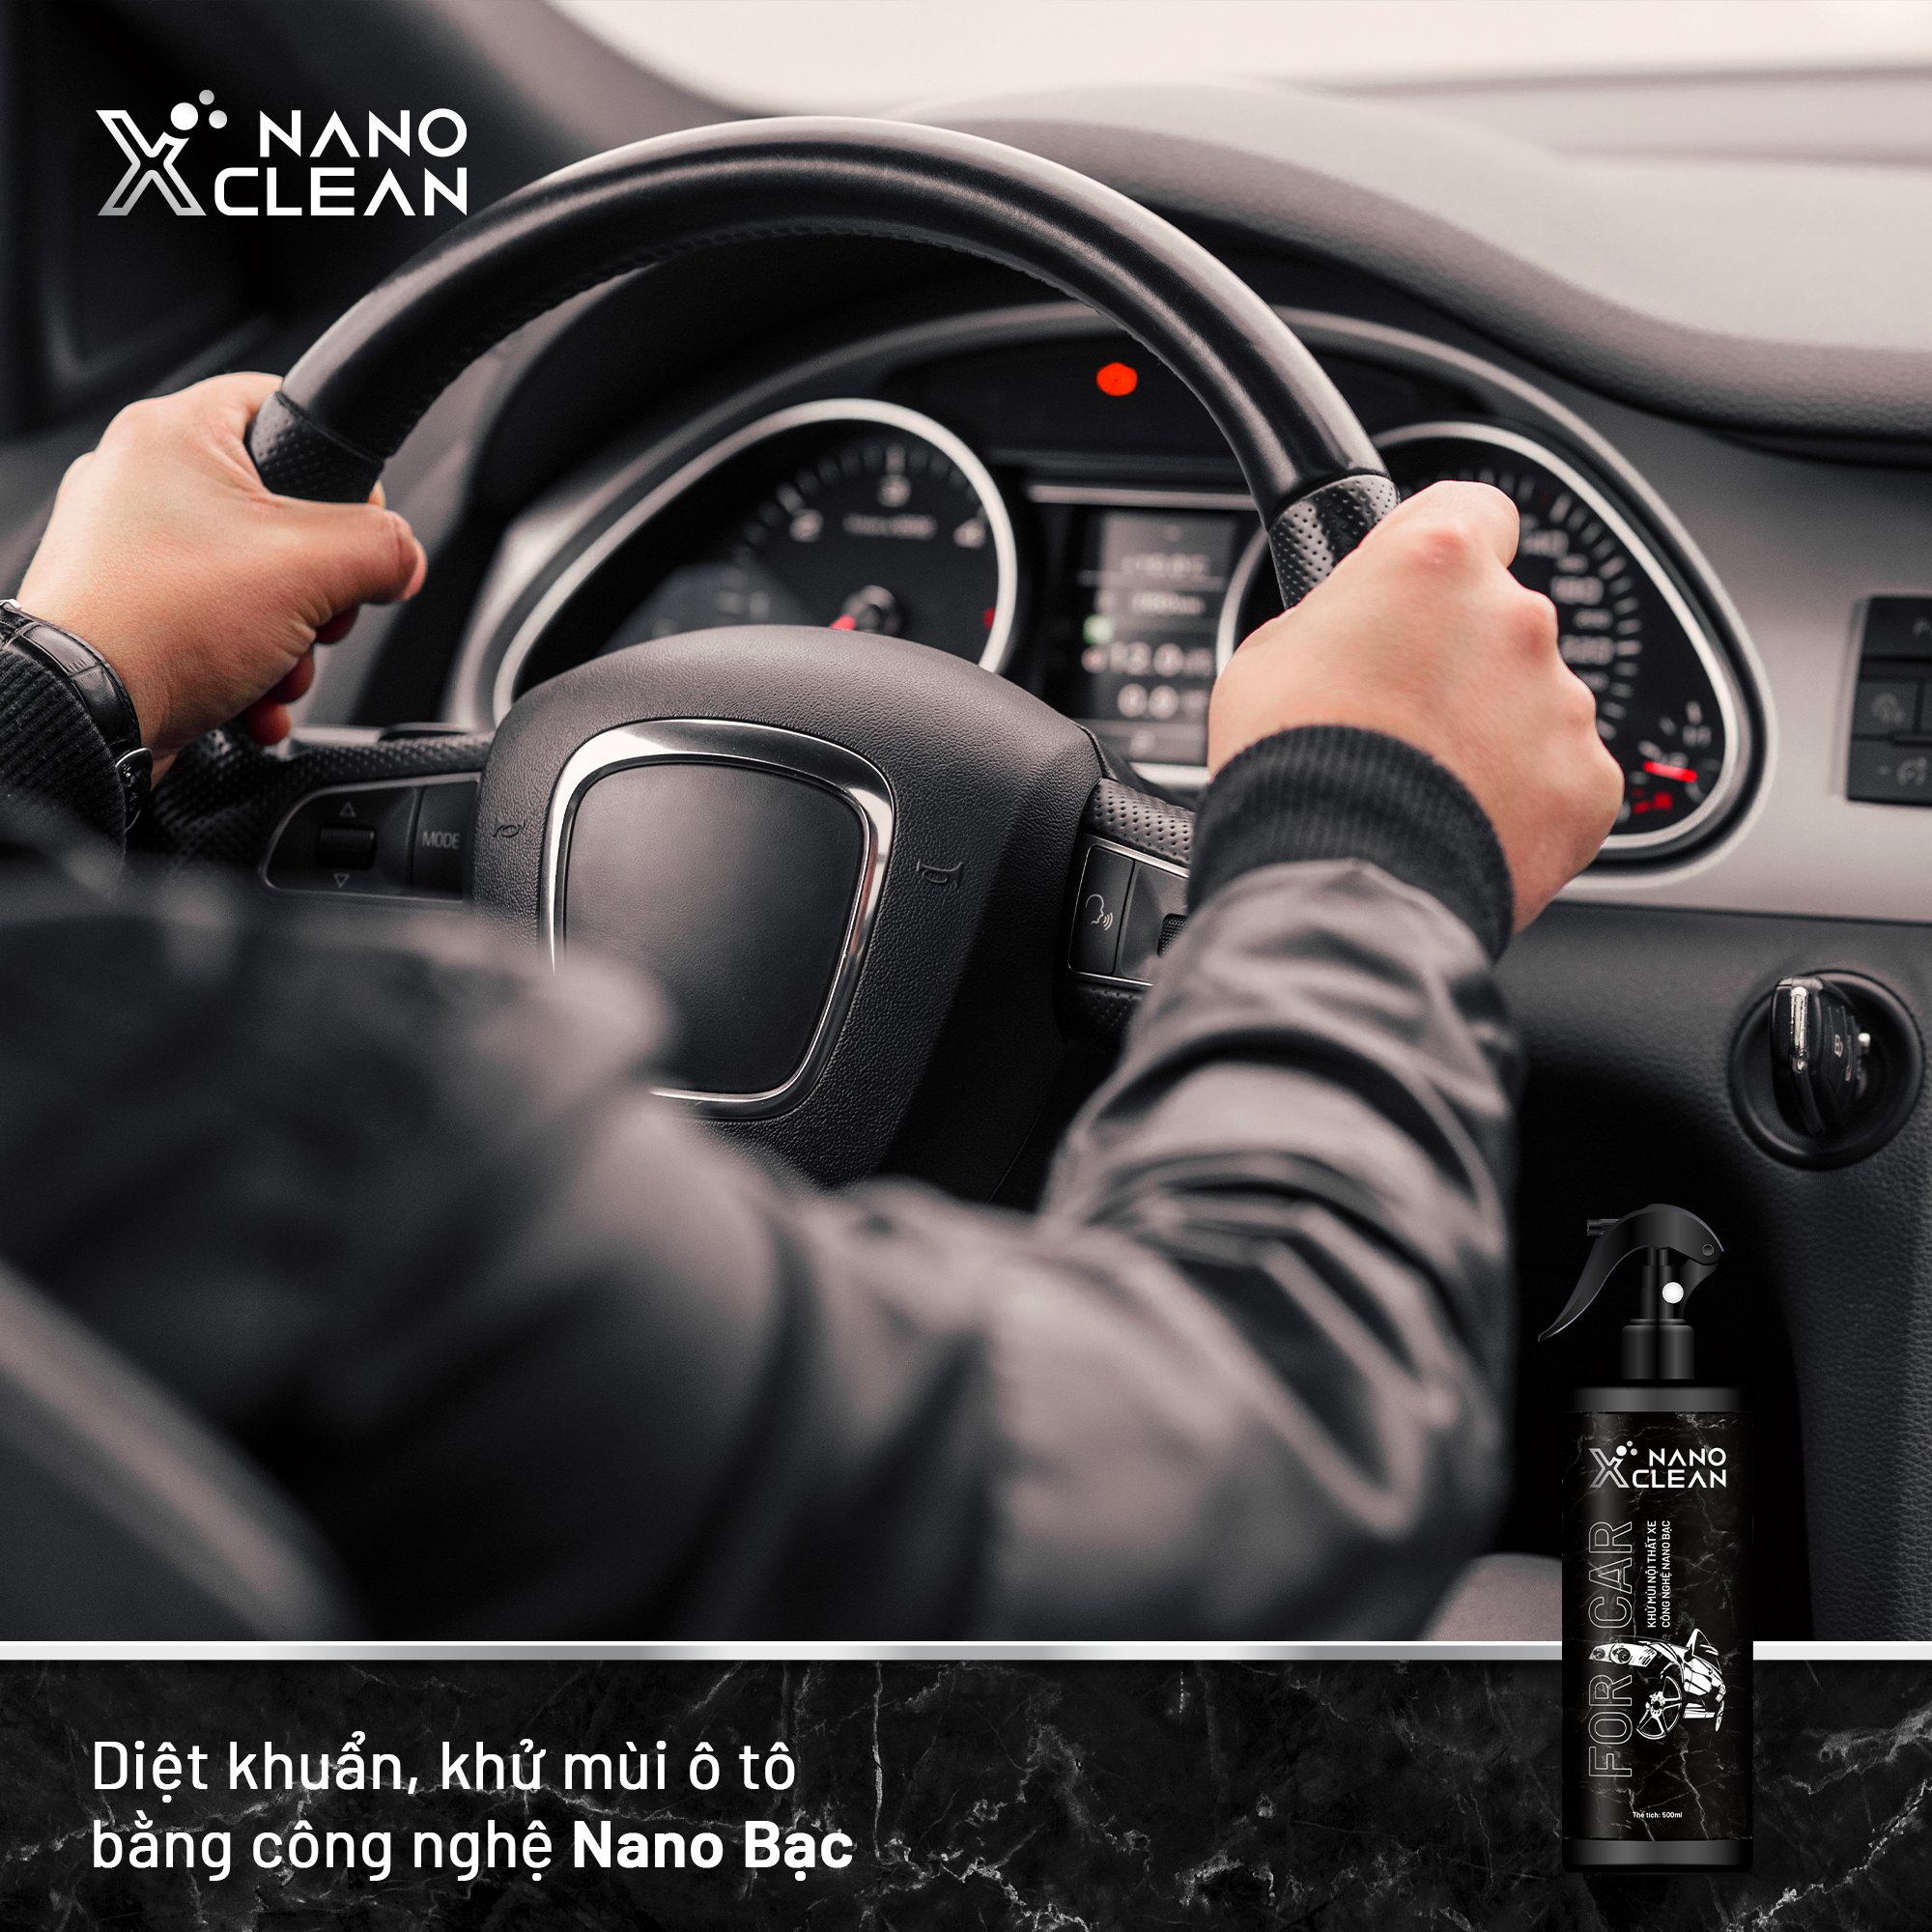 Khử mùi xe ô tô, khử mùi xe hơi nano bạc Nano Xclean For Car 500ML AHT Corp - chai xịt diệt khuẩn khử mùi ô tô, mùi hải sản, mùi ẩm mốc, mùi hôi khó chịu không gian nội thất xe ô tô - công nghệ nano an toàn, thân thiện